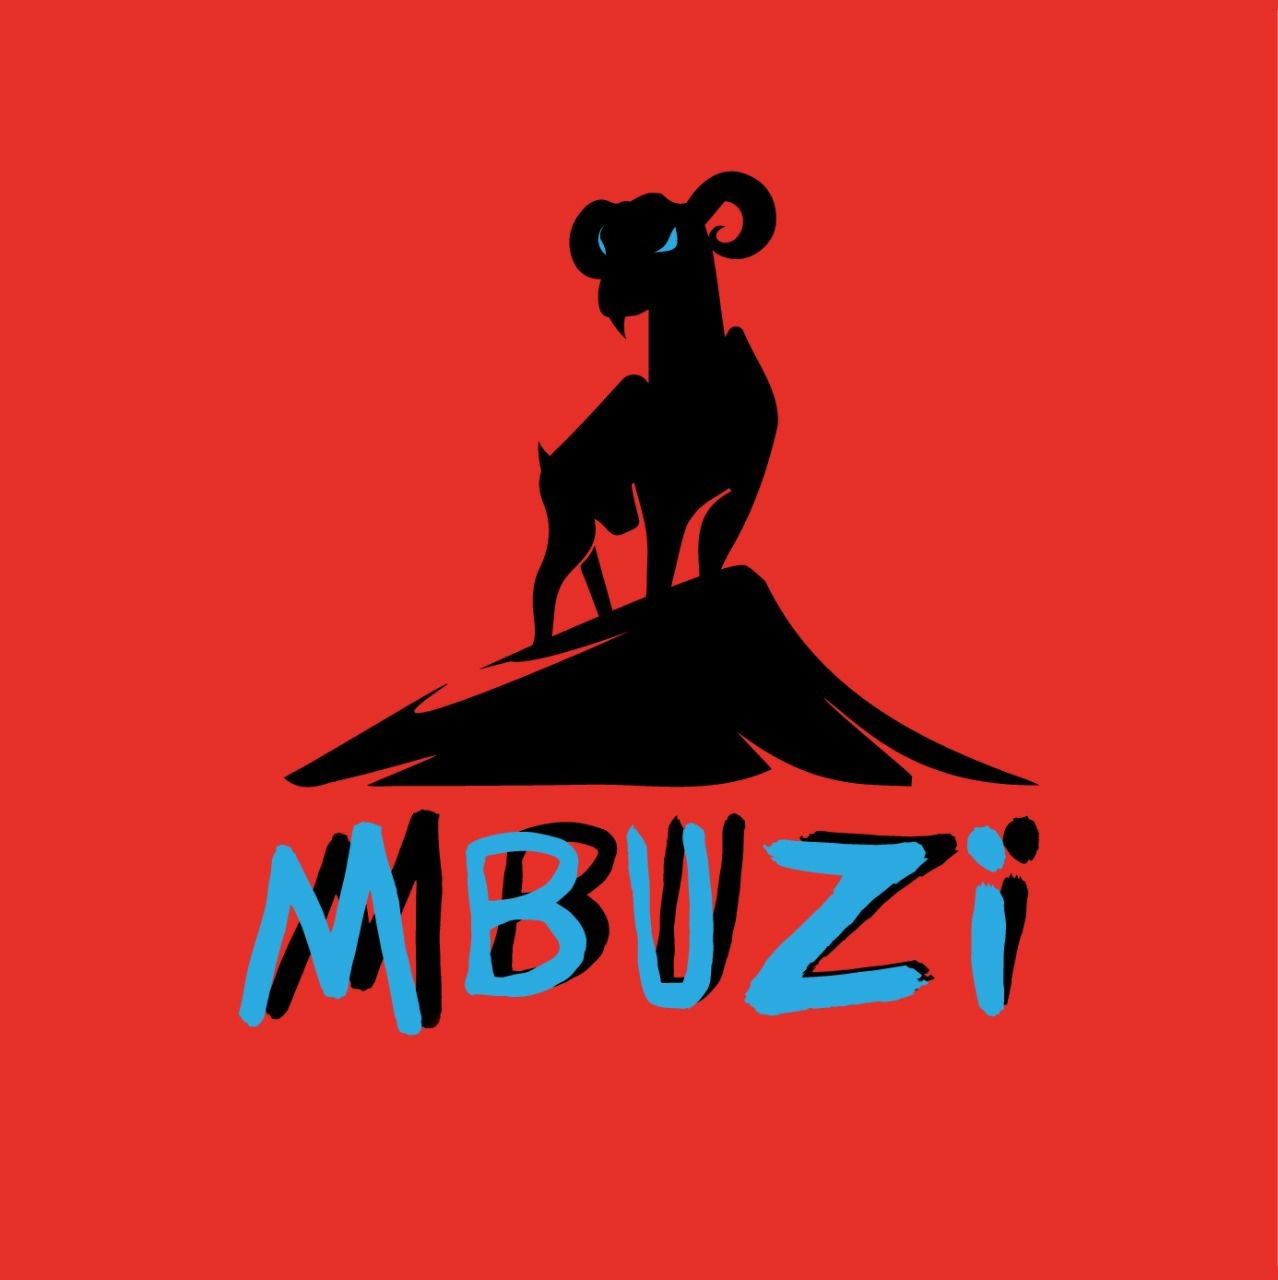 Mbuzi Outdoor